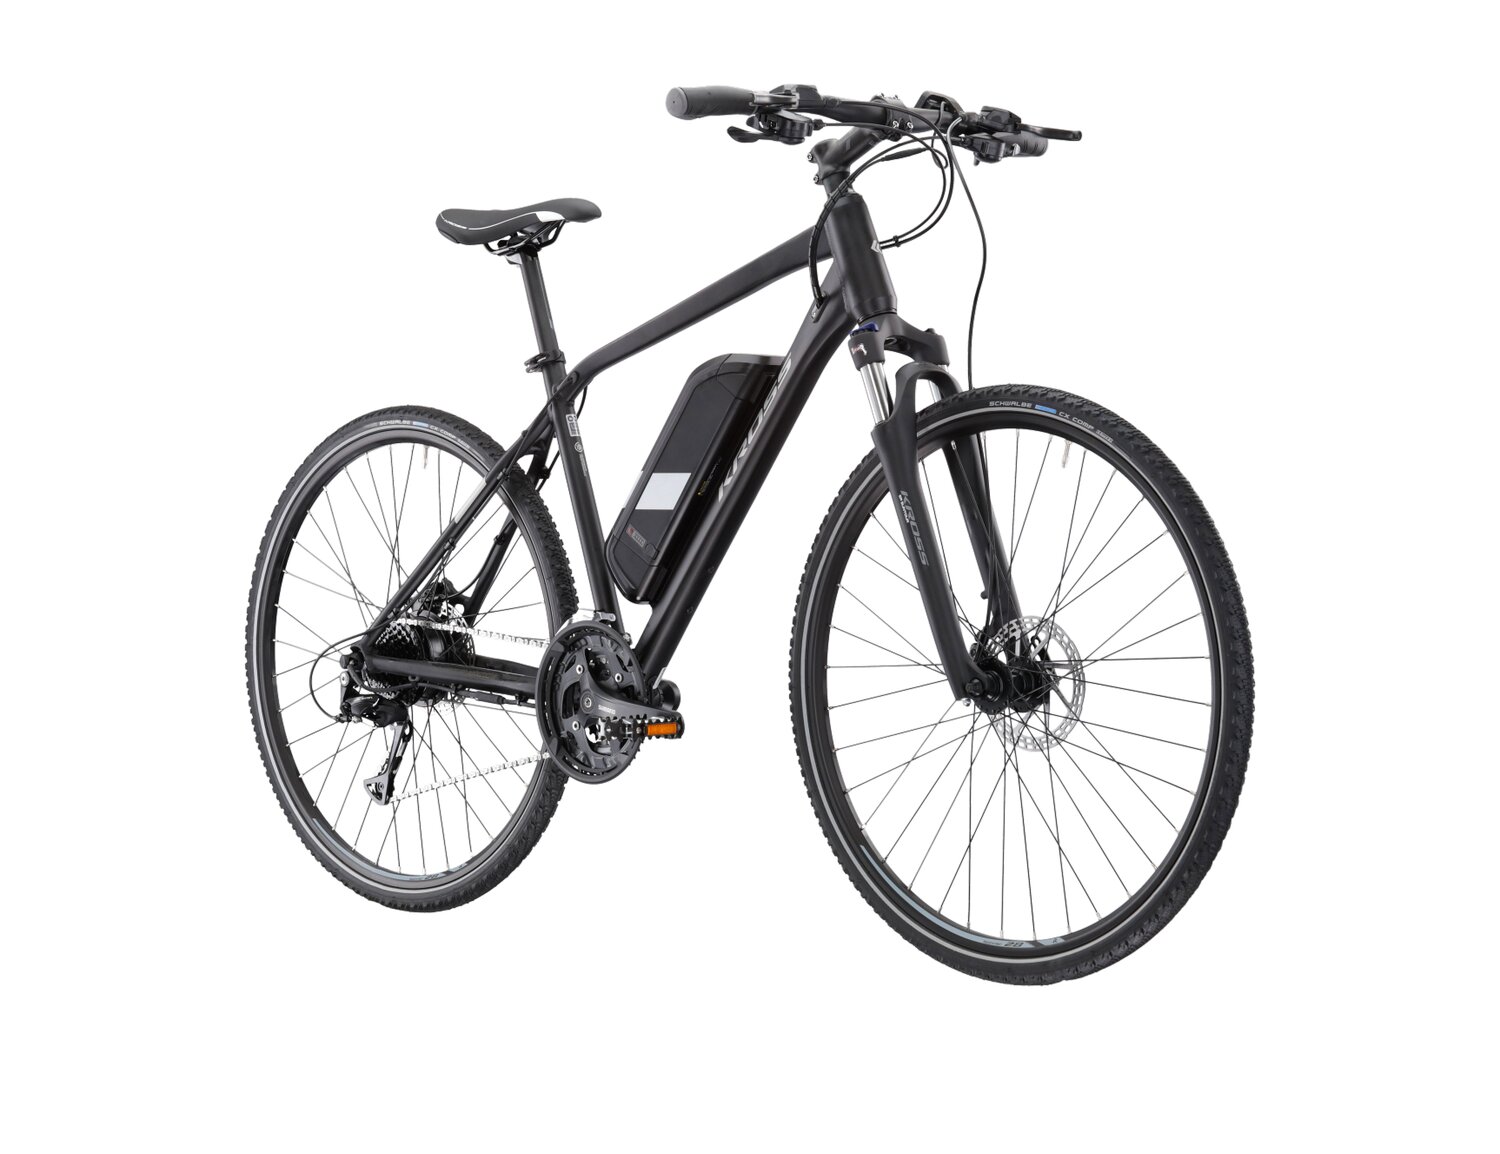  Elektryczny rower crossowy KROSS Evado Hybrid 1.0 522 Wh na aluminiowej ramie w kolorze czarnym wyposażony w osprzęt Shimano i napęd elektryczny Bafang